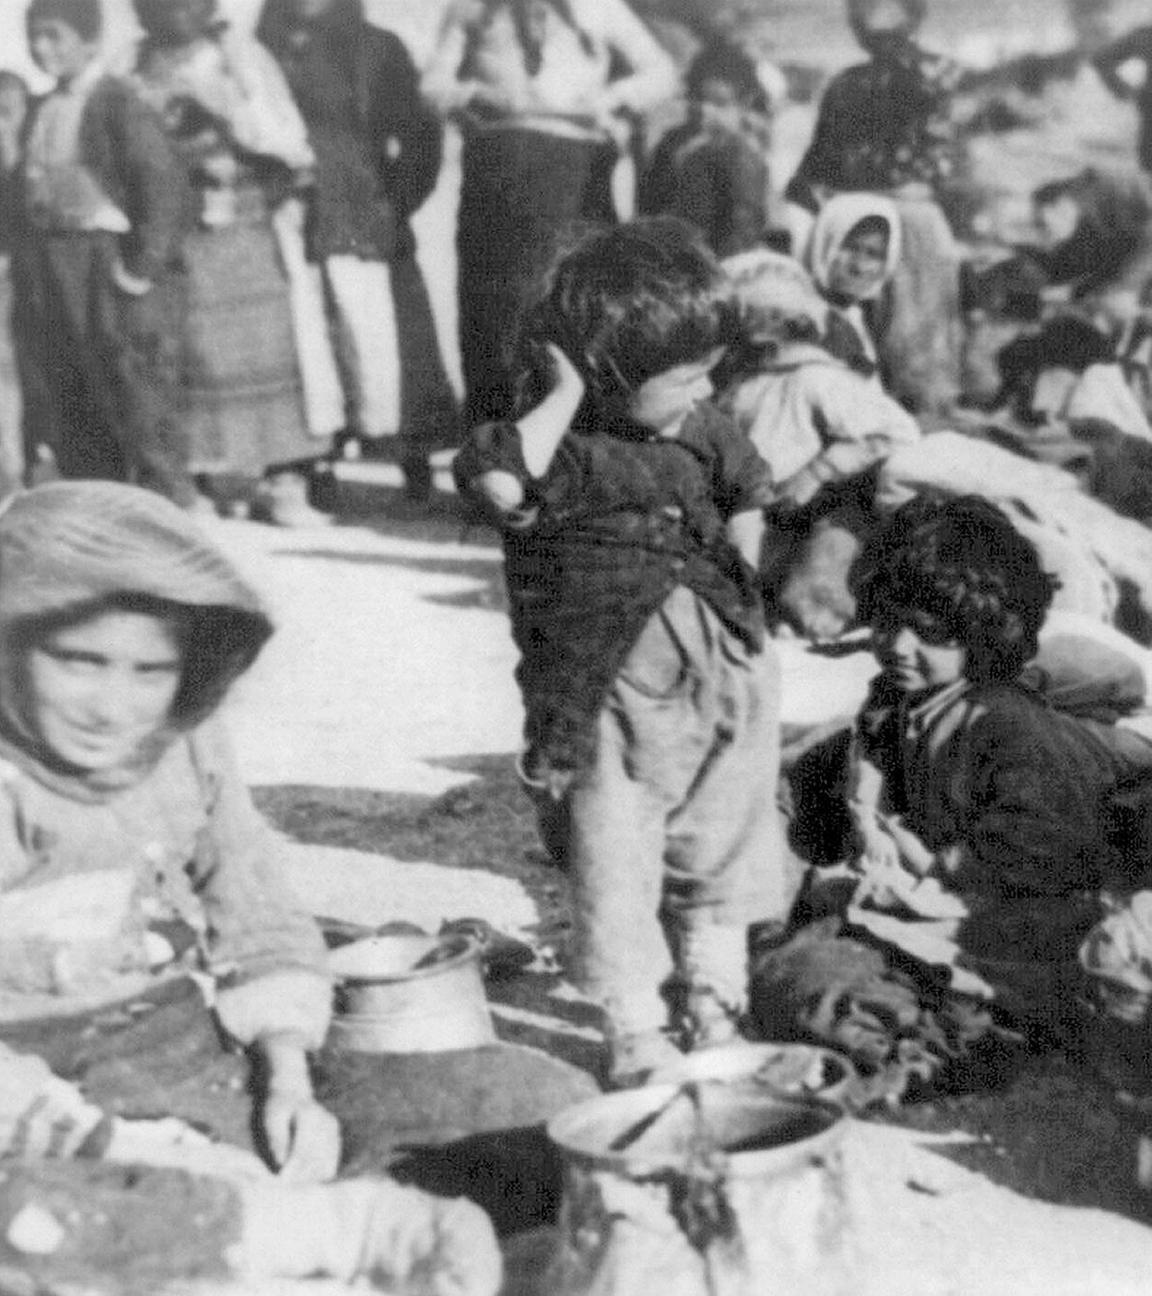 Archiv: Eine Gruppe armenischer Flüchtlinge aus dem Osmanischen Reich sitzt 1915 in Syrien auf dem Boden